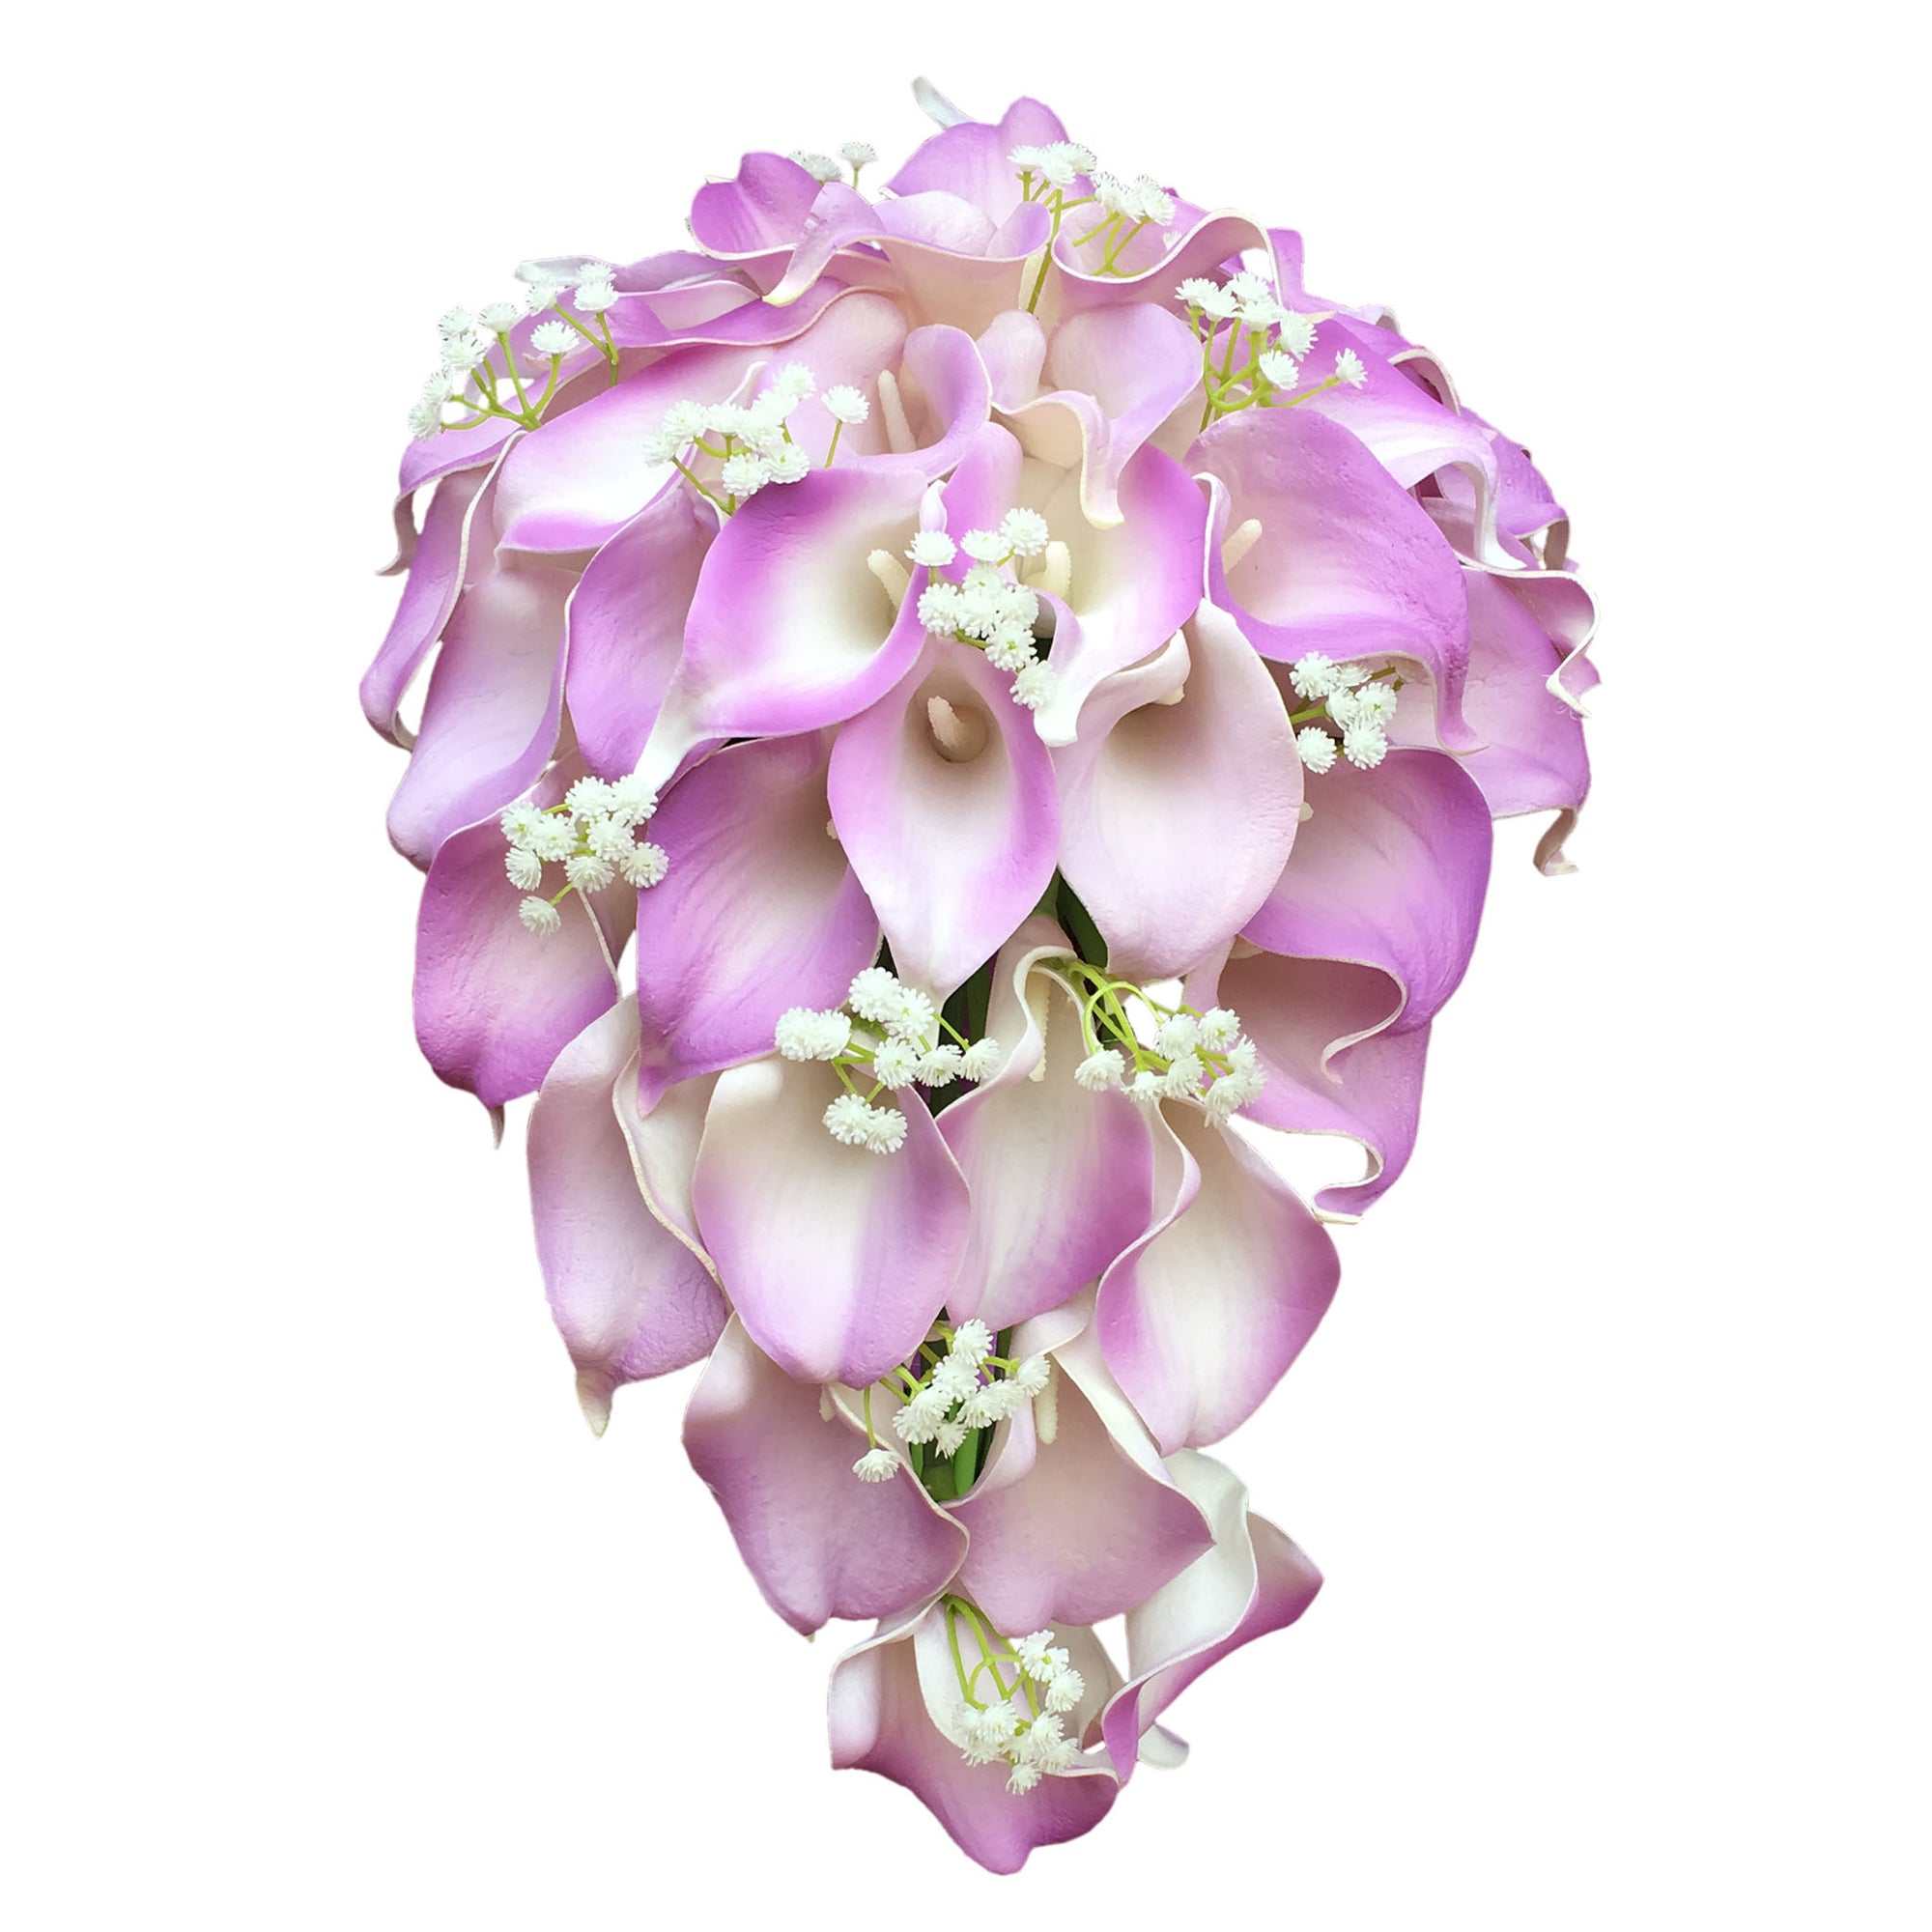 Cascade Bouquet Wedding Flowers Lavender Calla Lily Bouquet